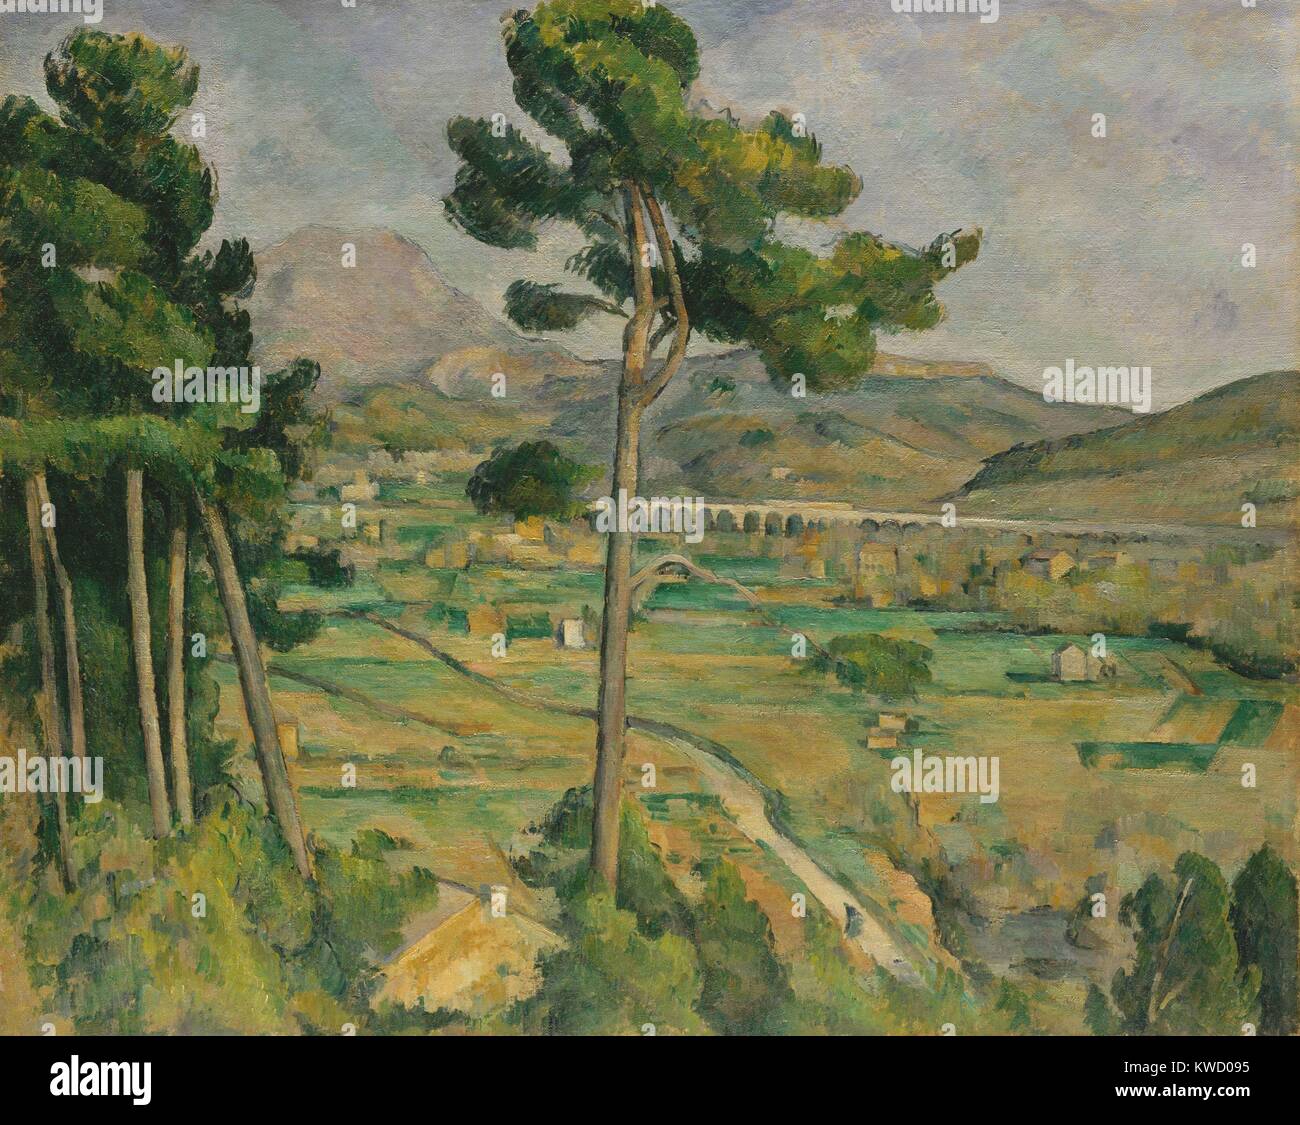 Mont Sainte-Victoire, Viadukt der Arc River Valley, von Paul Cezanne, 1882-85, Postimpressionismus. Cezannes Heimatstadt Aix-en-Provence ist in der Ferne, am Ufer der Arc River Valley (BSLOC 2017 5 5) Stockfoto